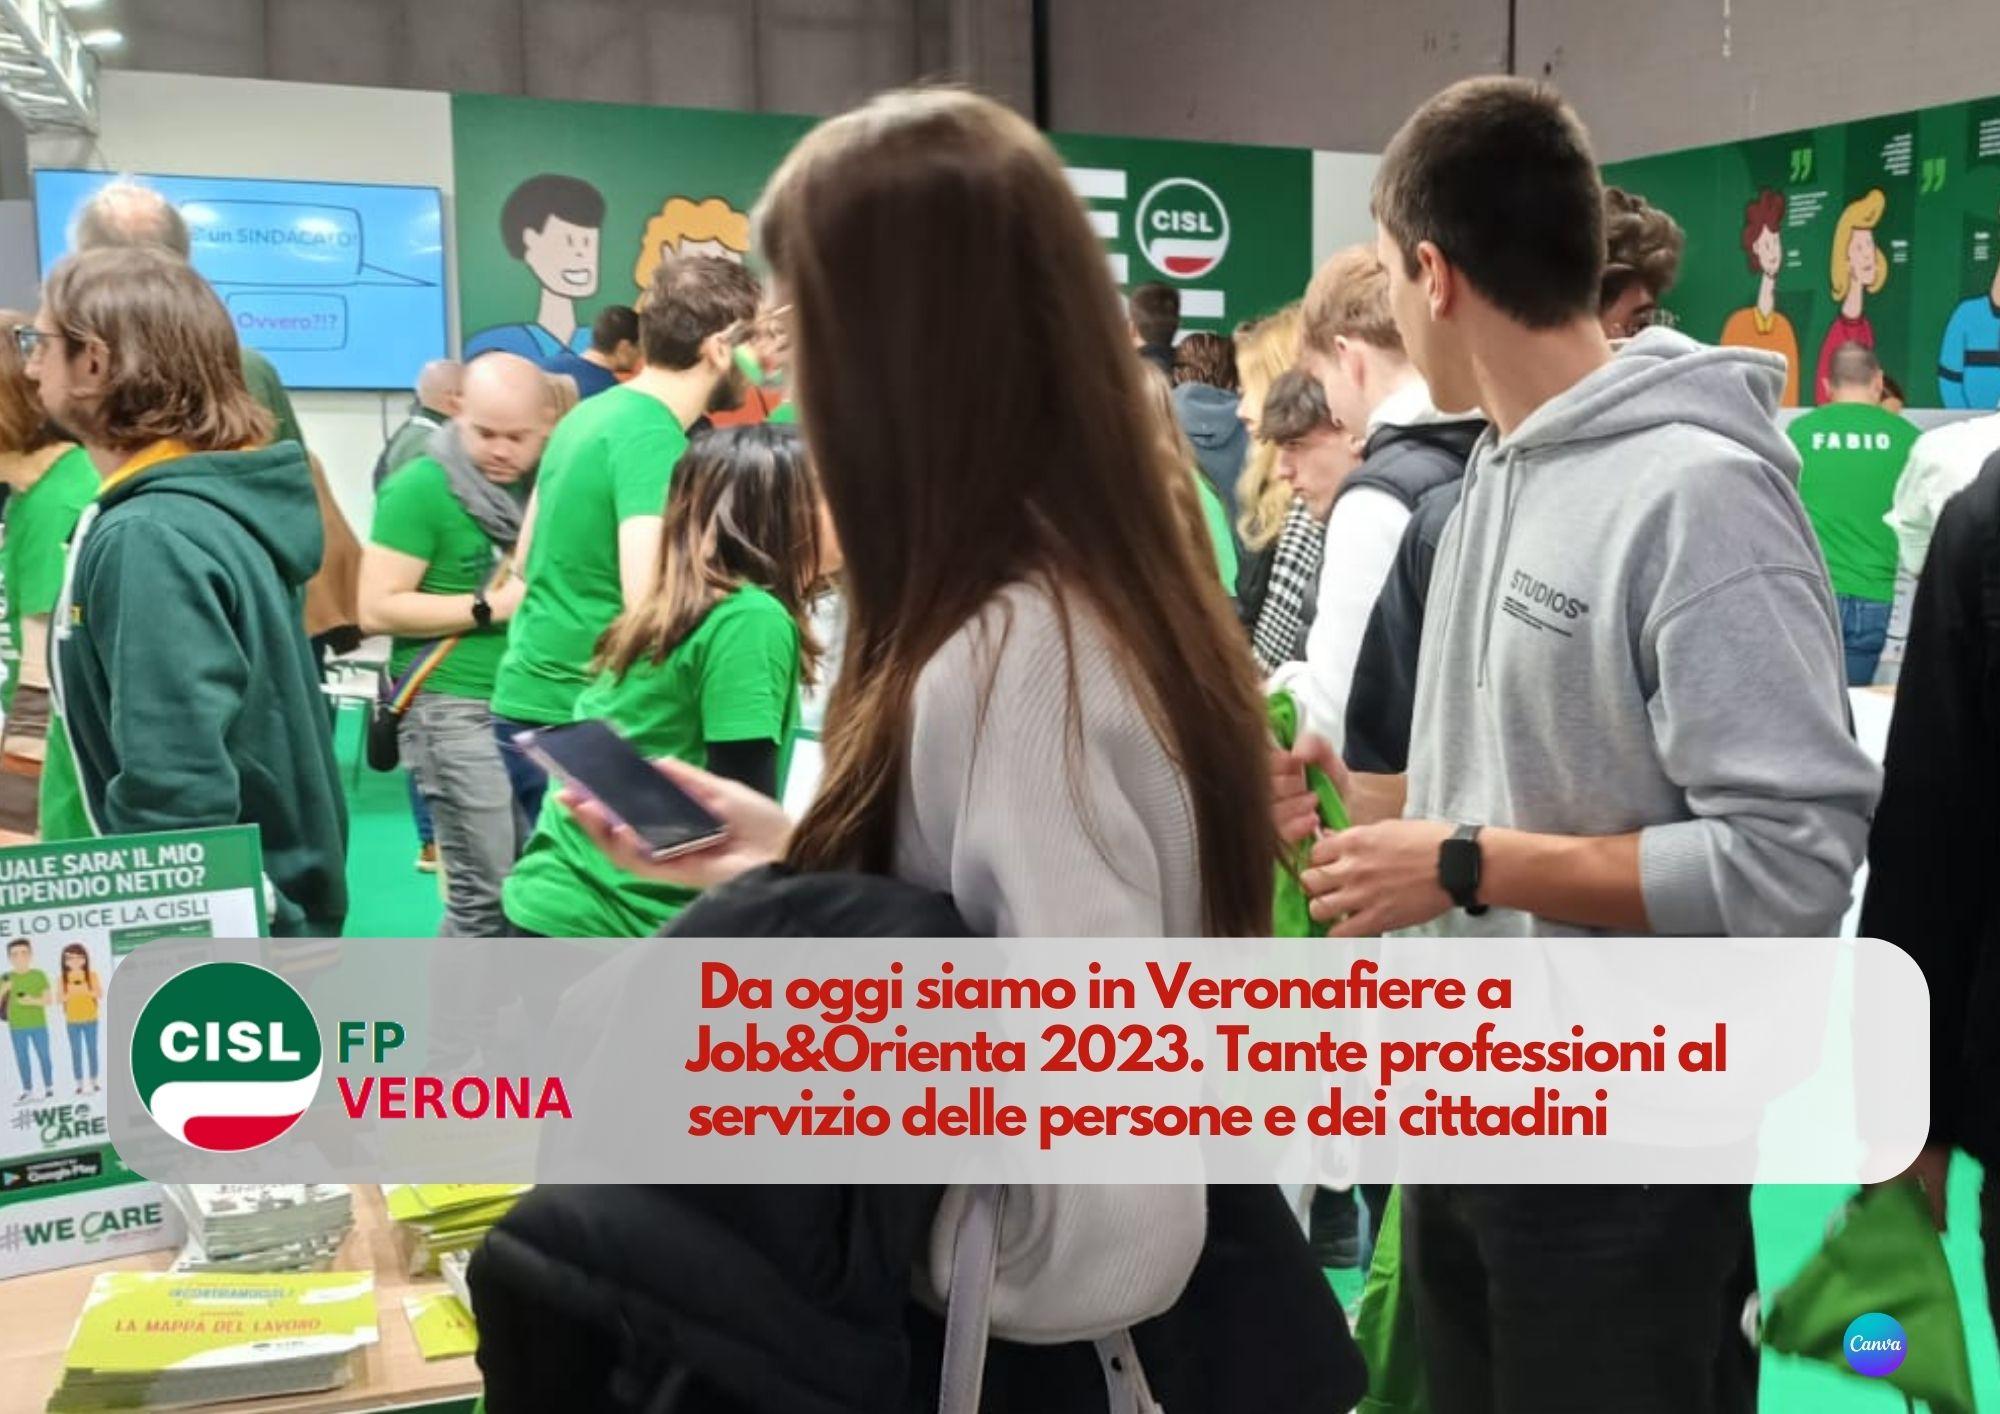 CISL FP Verona. Siamo in Veronafiere a Job&Orienta 2023. Tante professioni al servizio delle persone e dei cittadini